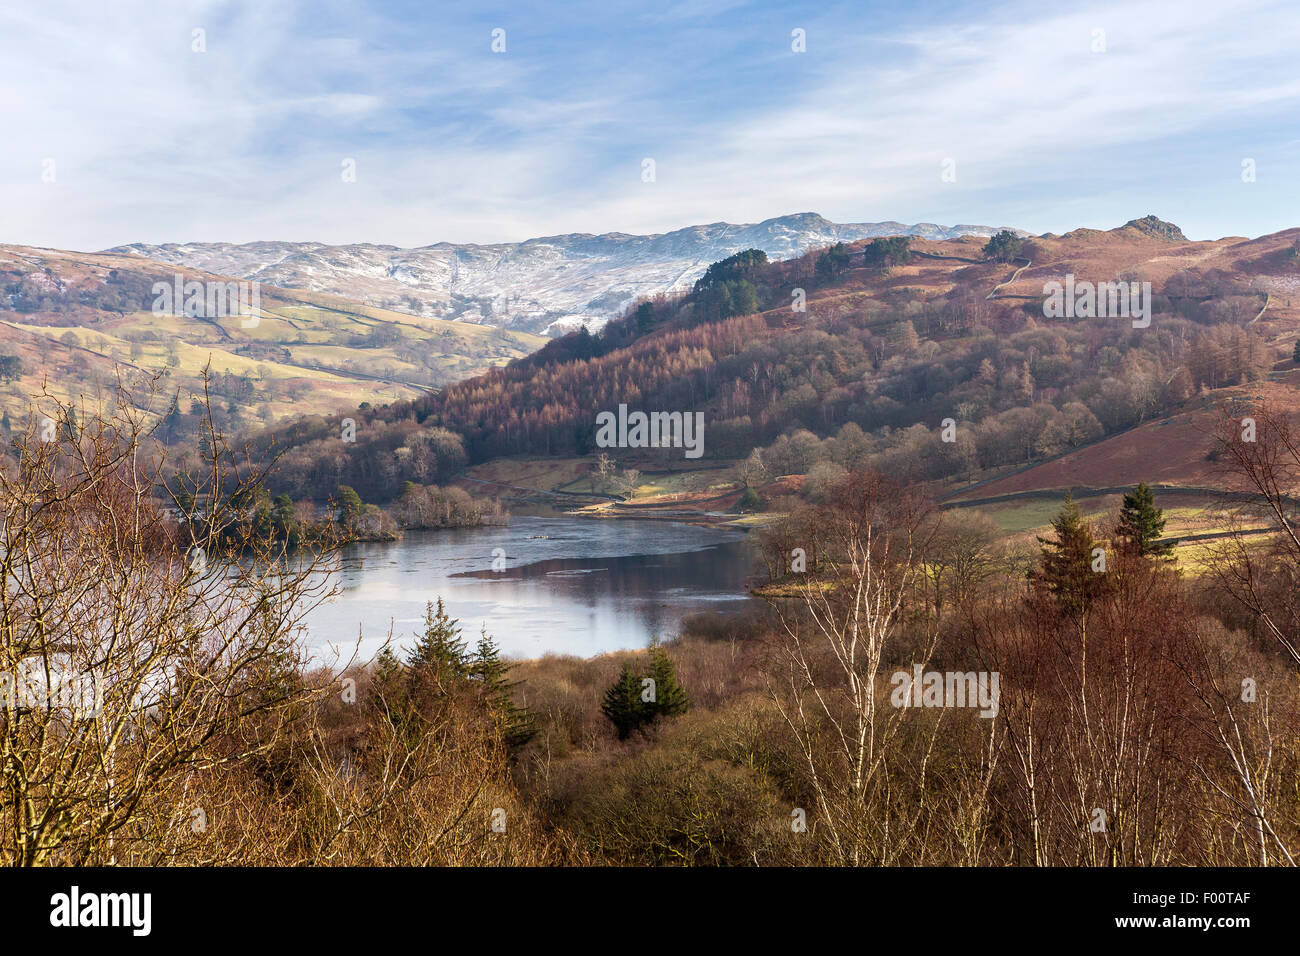 Une vue sur l'eau de mousse blanche Rydal, Commune du Parc National de Lake District, Cumbria, Angleterre, Royaume-Uni, Europe. Banque D'Images